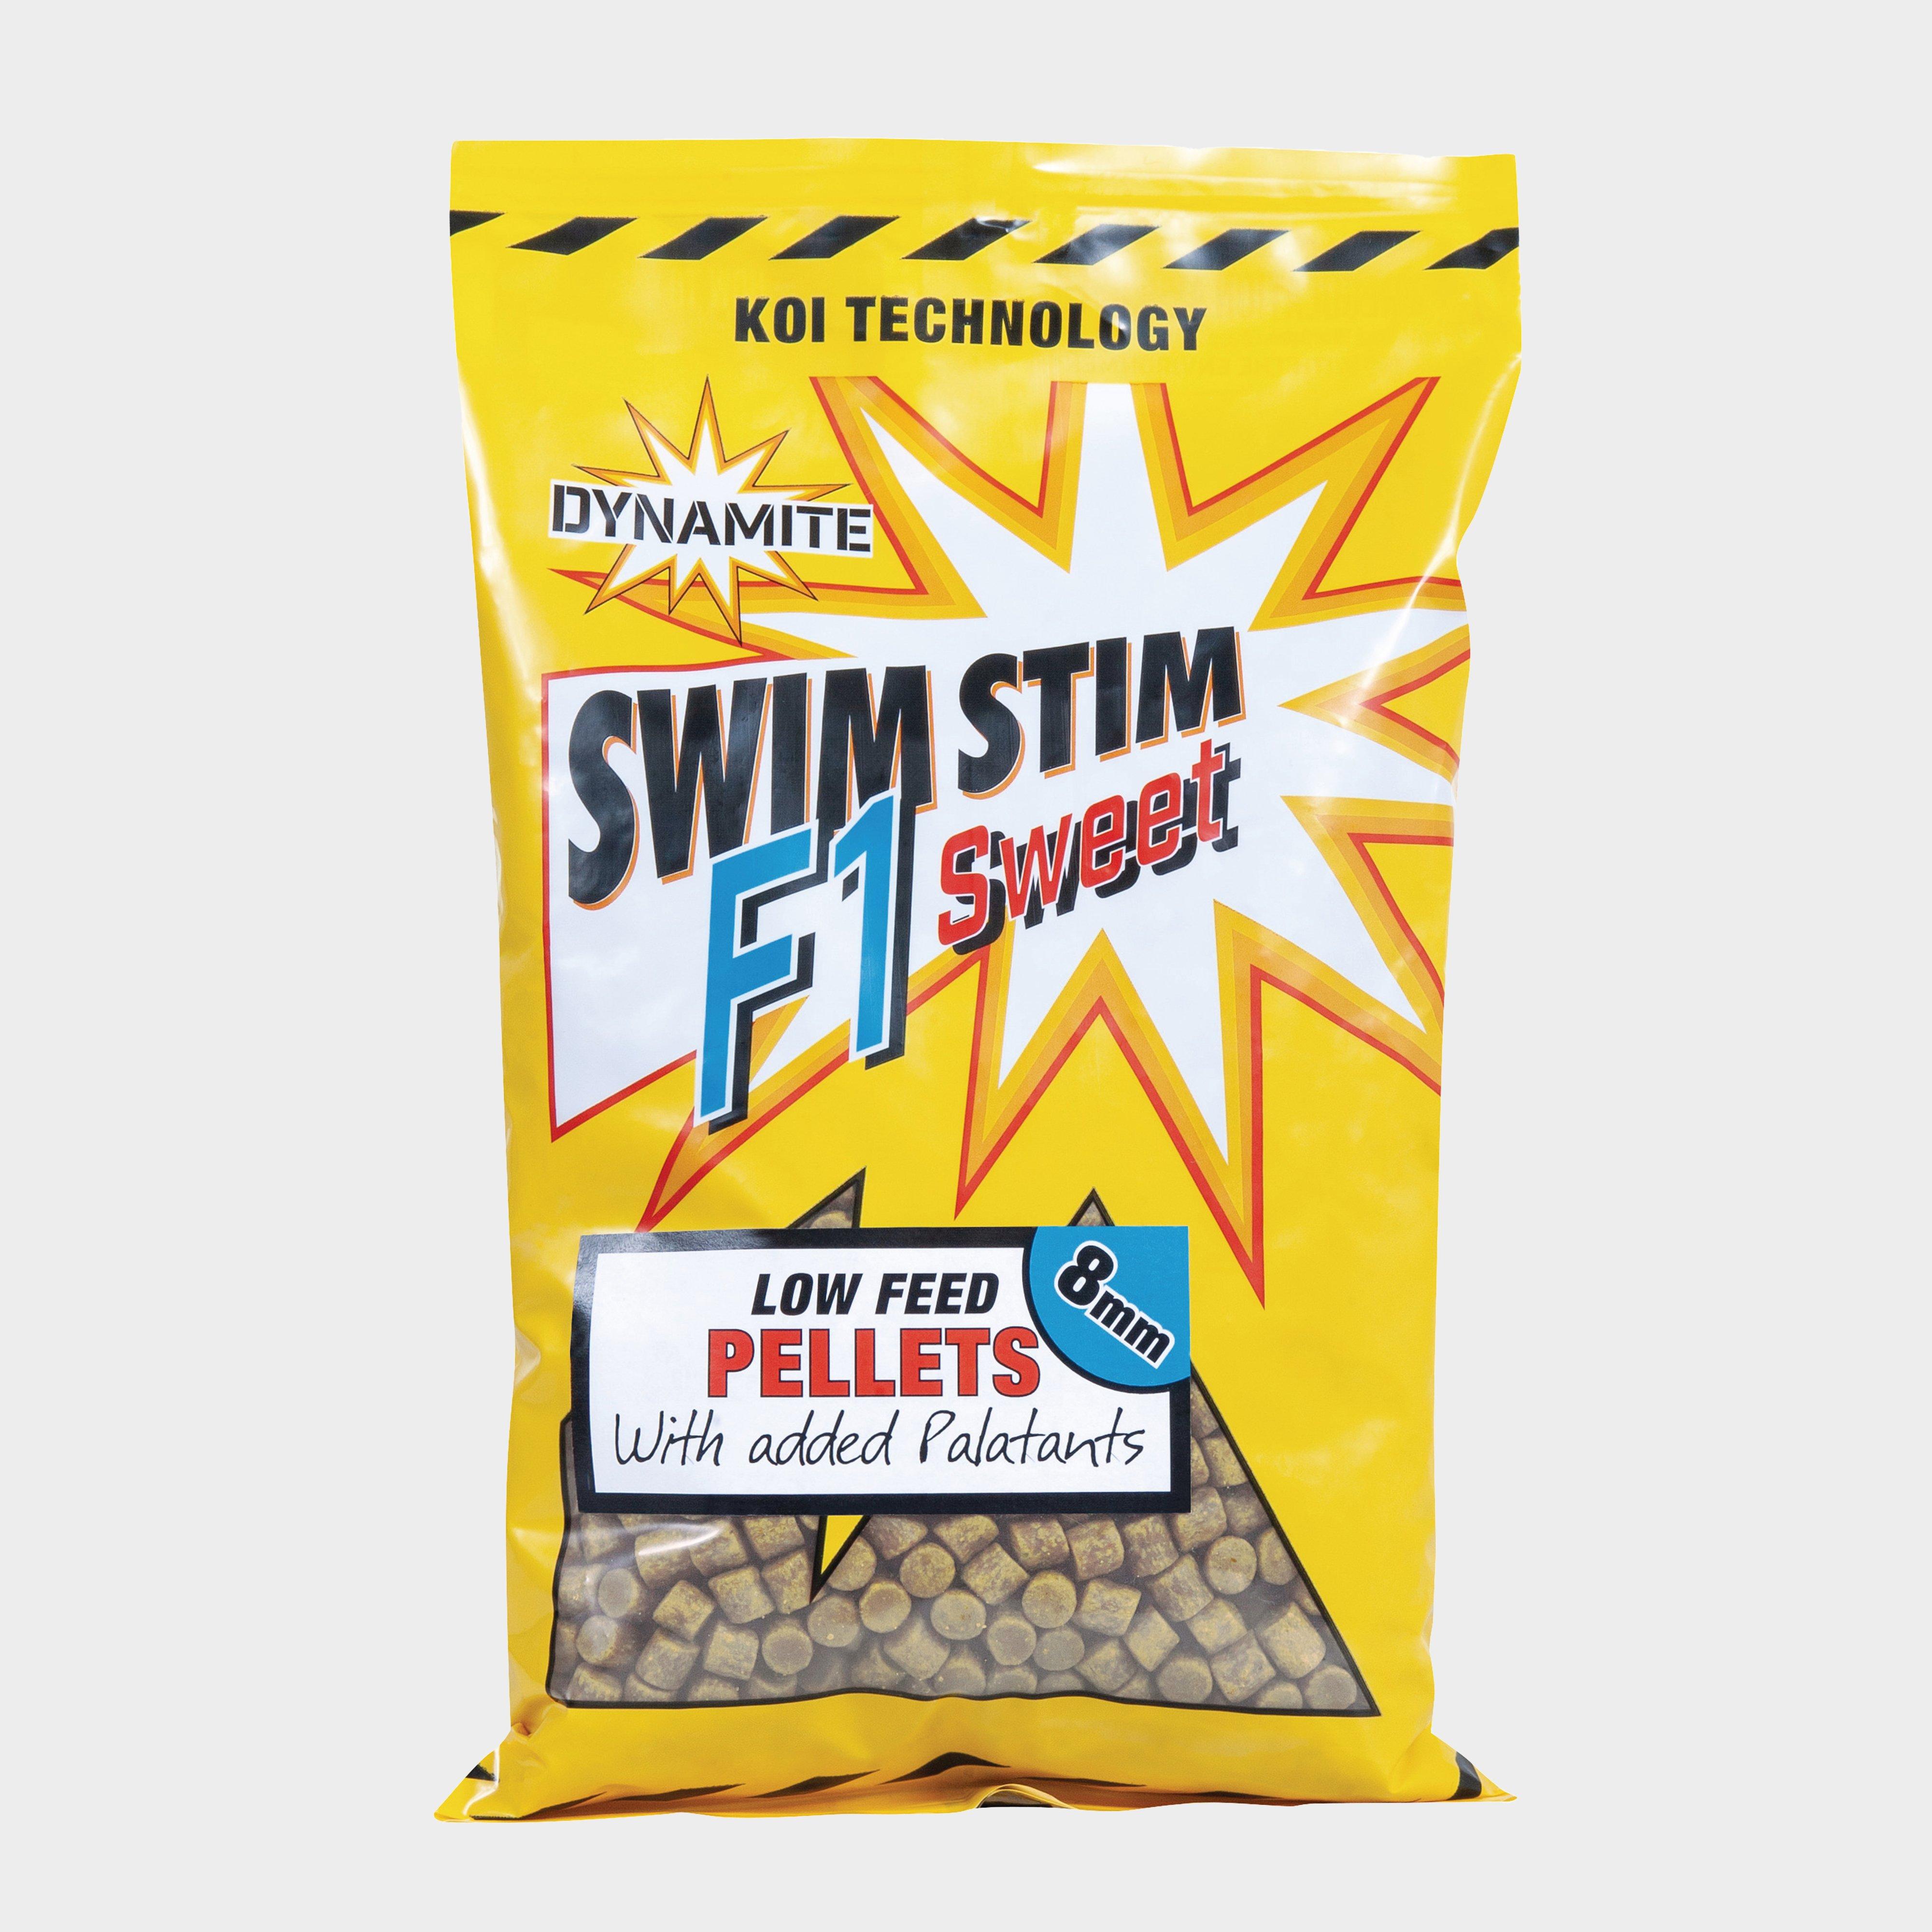 Dynamite Swim Stim F1 8mm 900g - 900g/900g  900g/900g